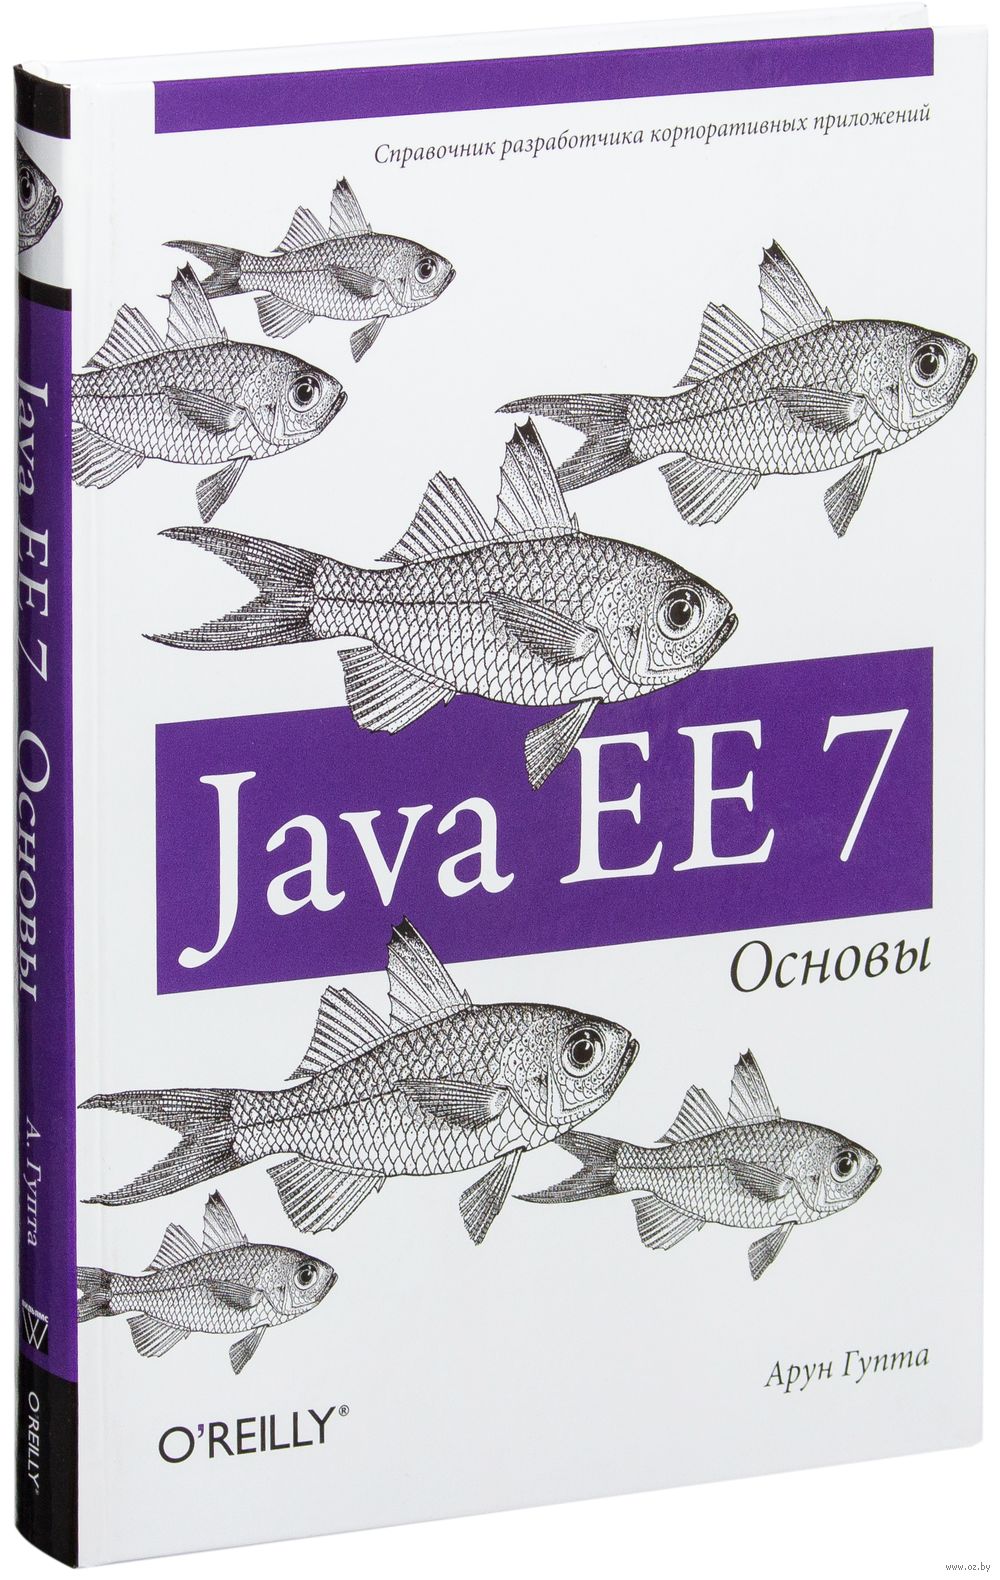 Java ee книга скачать